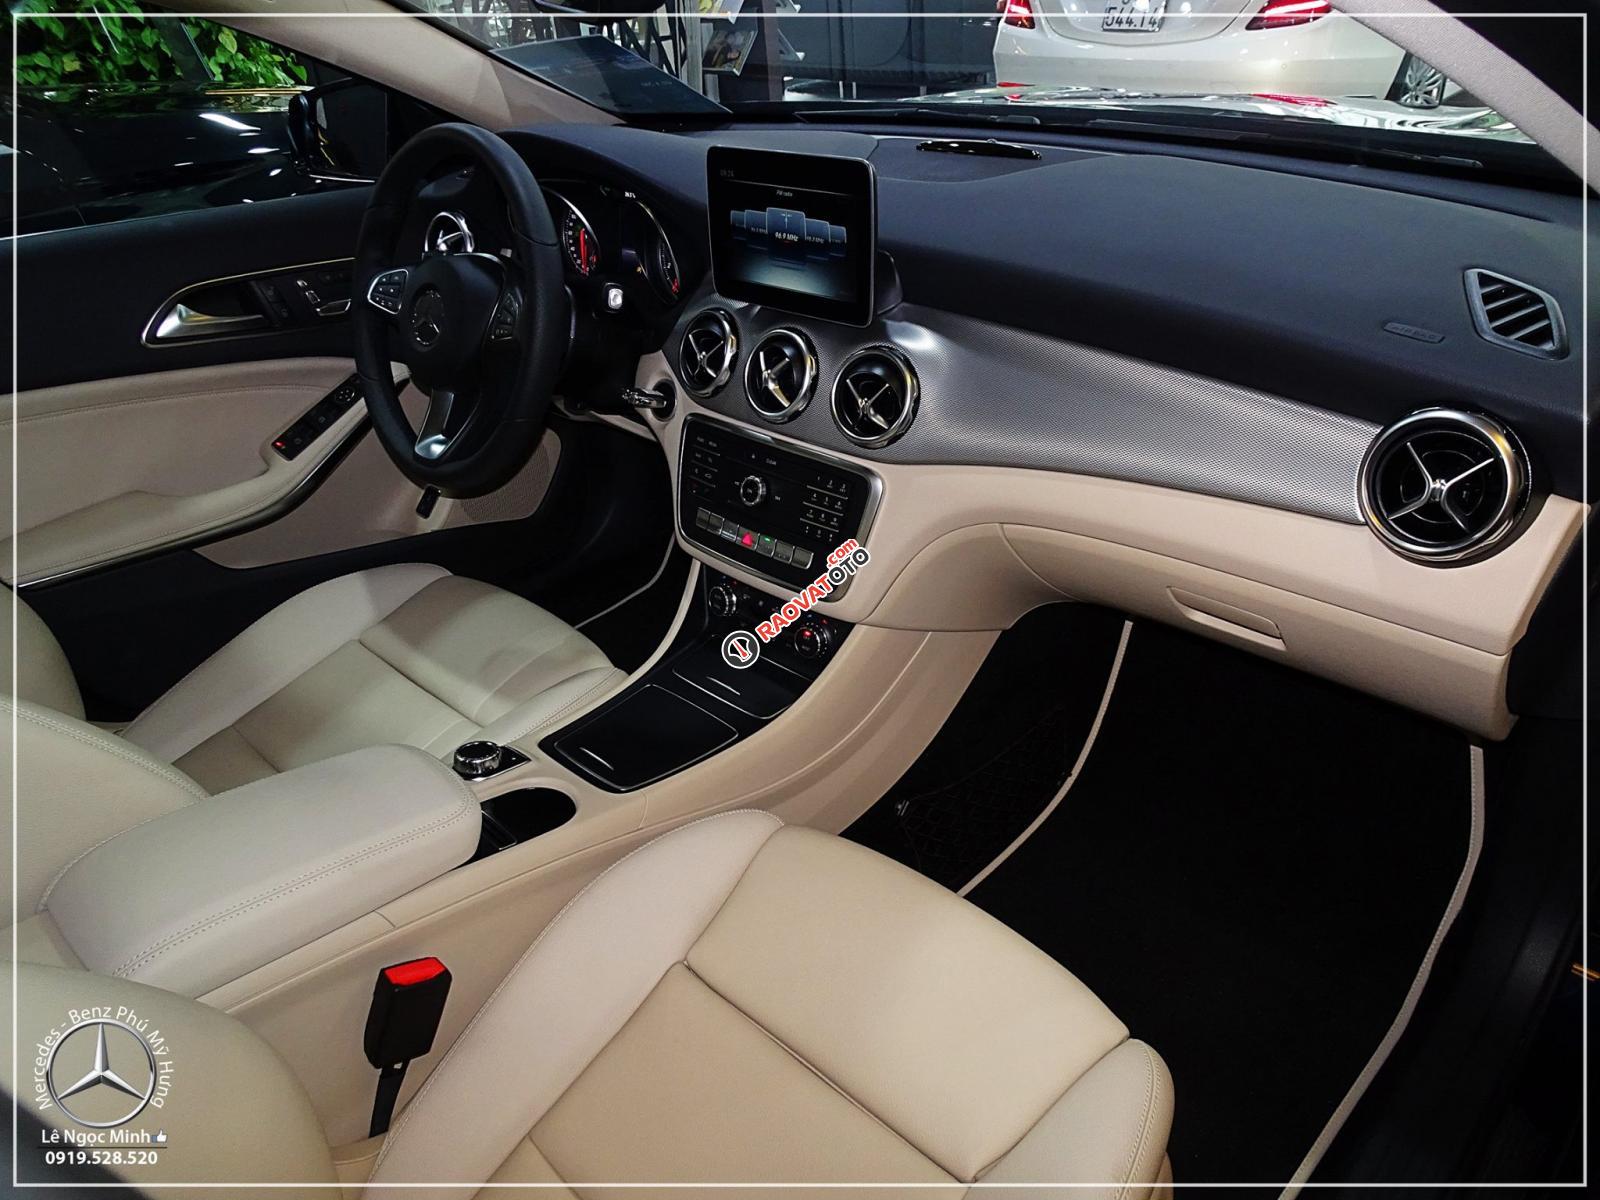 Bán Mercedes GLA 200 new - SUV 5 chỗ nhập khẩu - hỗ trợ ngân hàng 80%, xe giao ngay, LH 0919 528 520-1